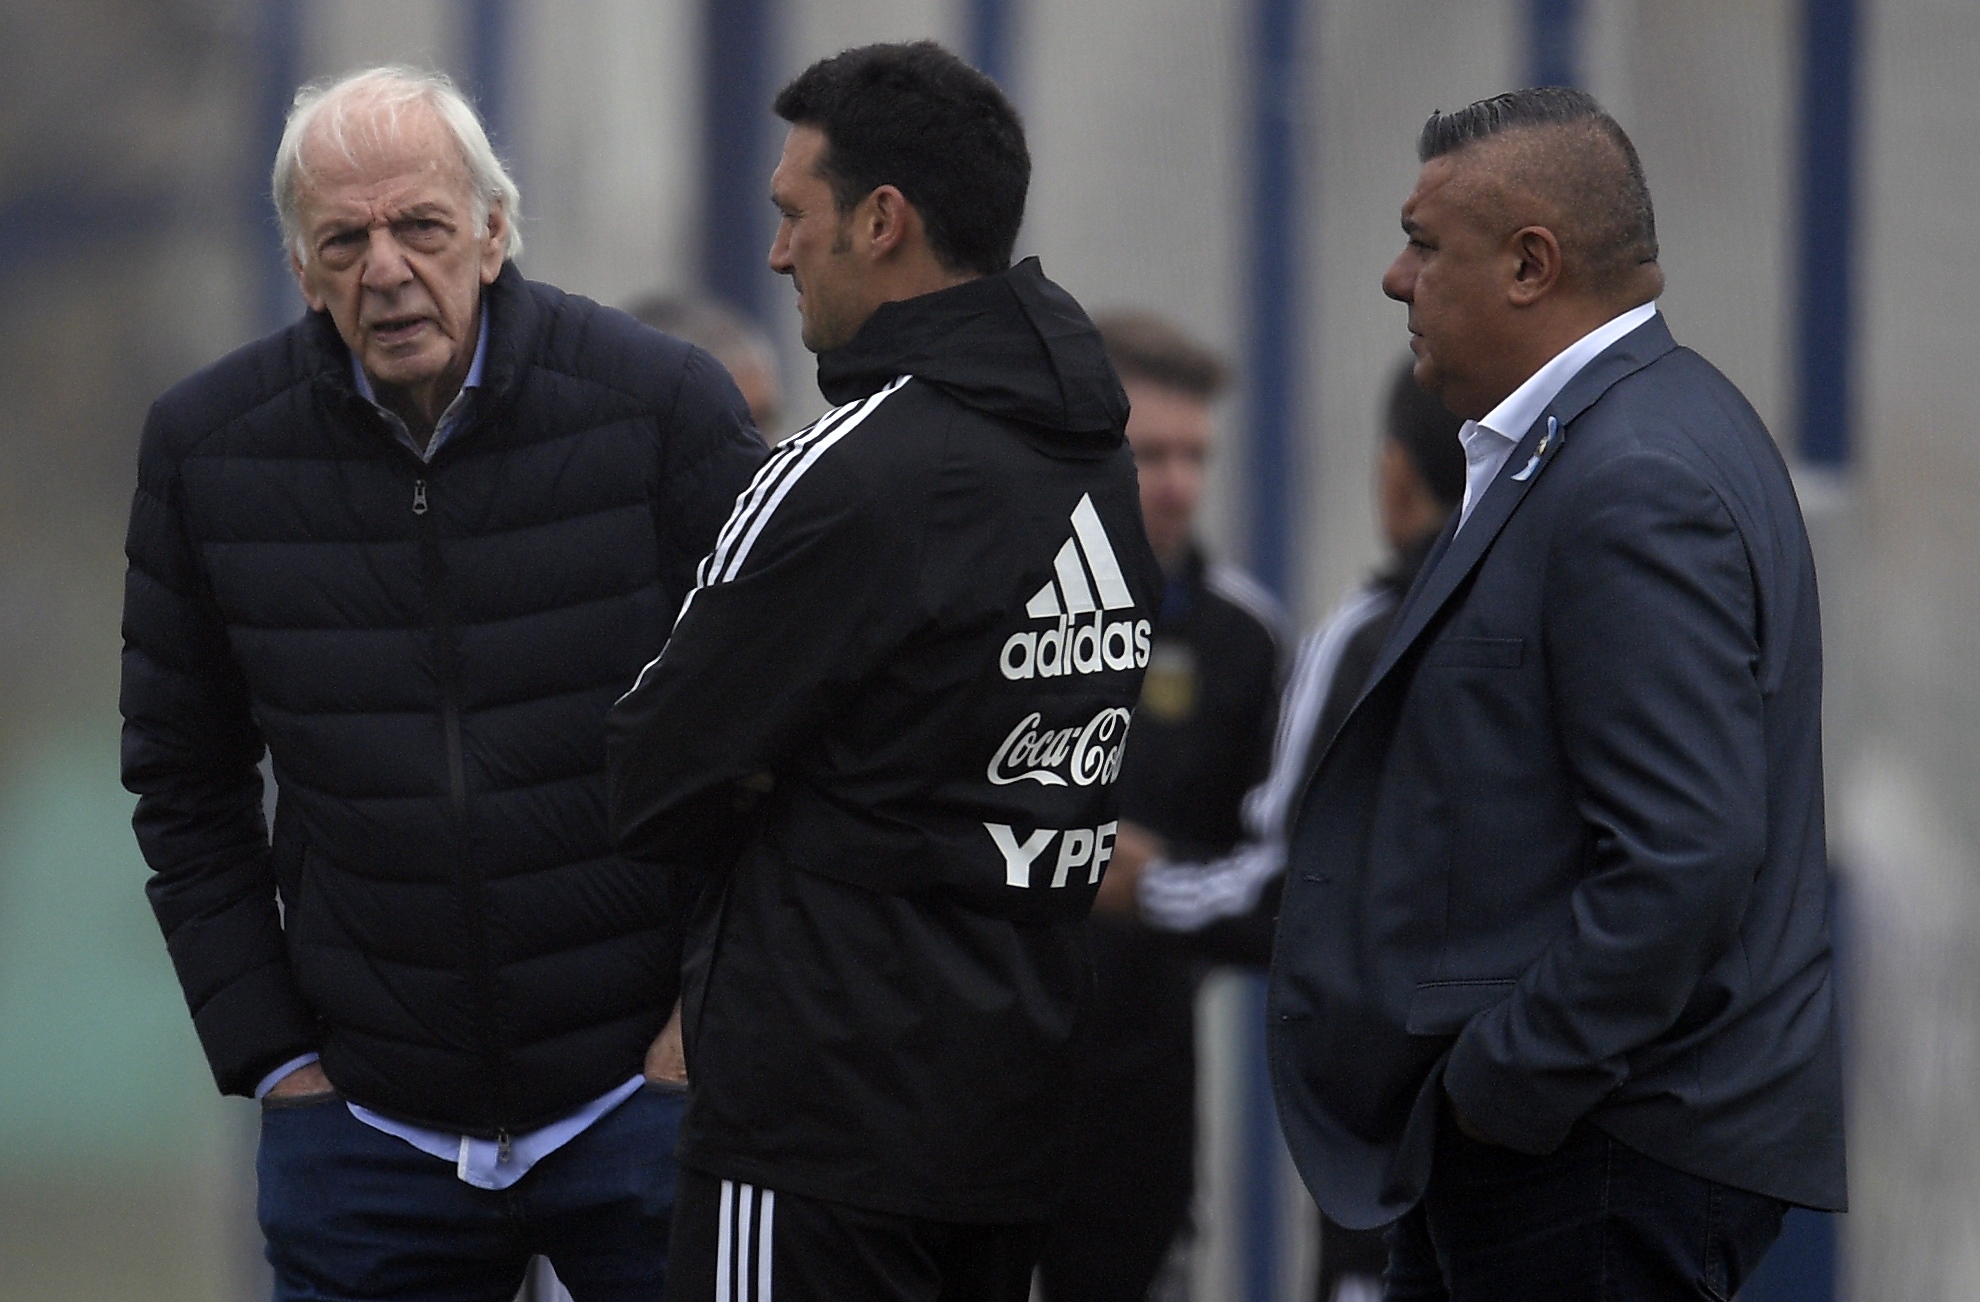 César Luis Menotti ha estado cerca de los jugadores durante la Copa América. (Foto Prensa Libre: AFP)